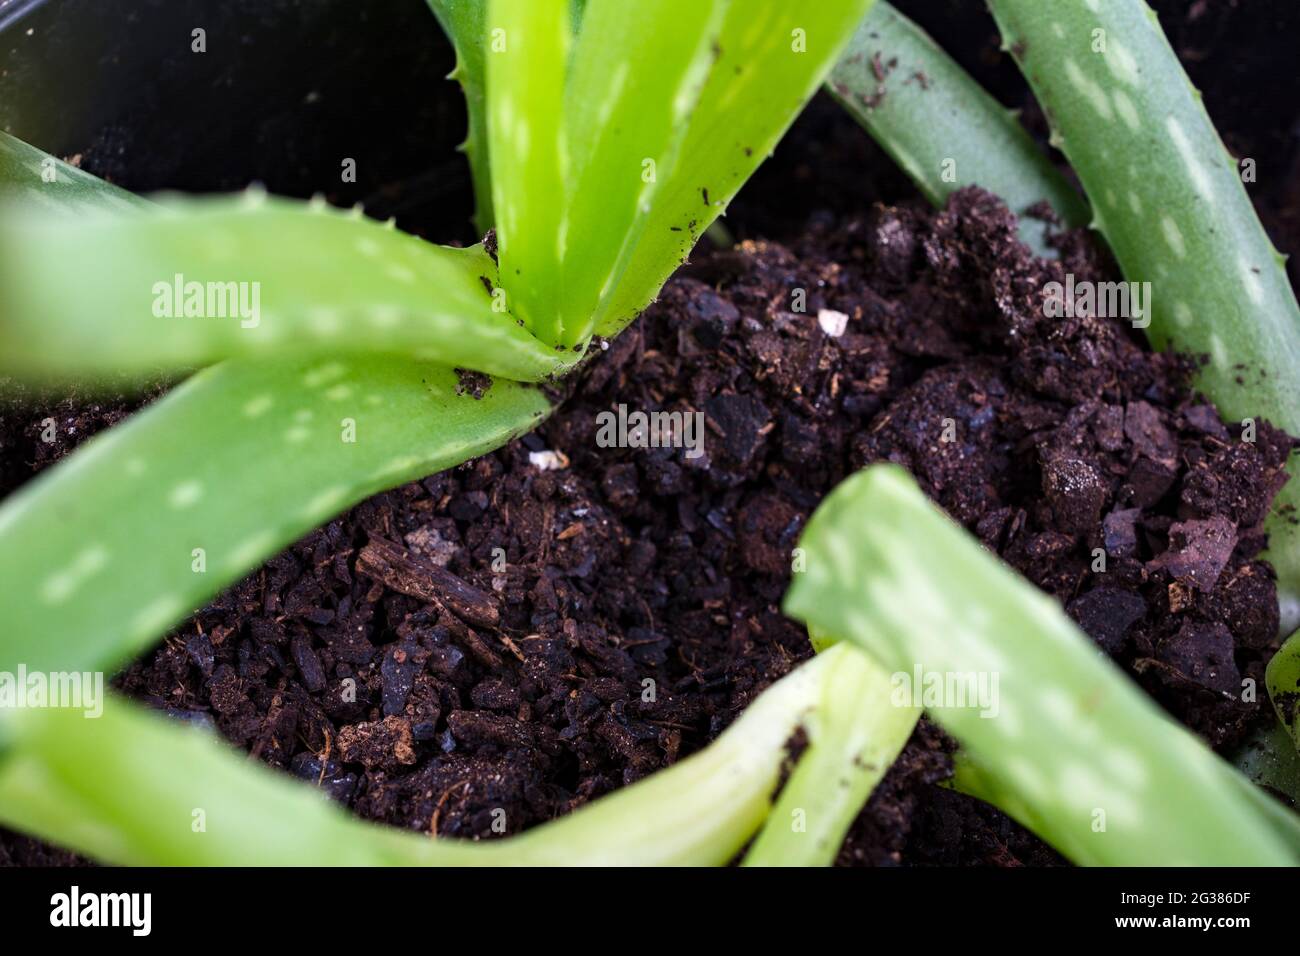 Piccole piantine di aloe vera in una pentola. Aloe vera è una specie di piante succulente del genere Aloe. Perenne sempreverde, proviene dal P arabo Foto Stock